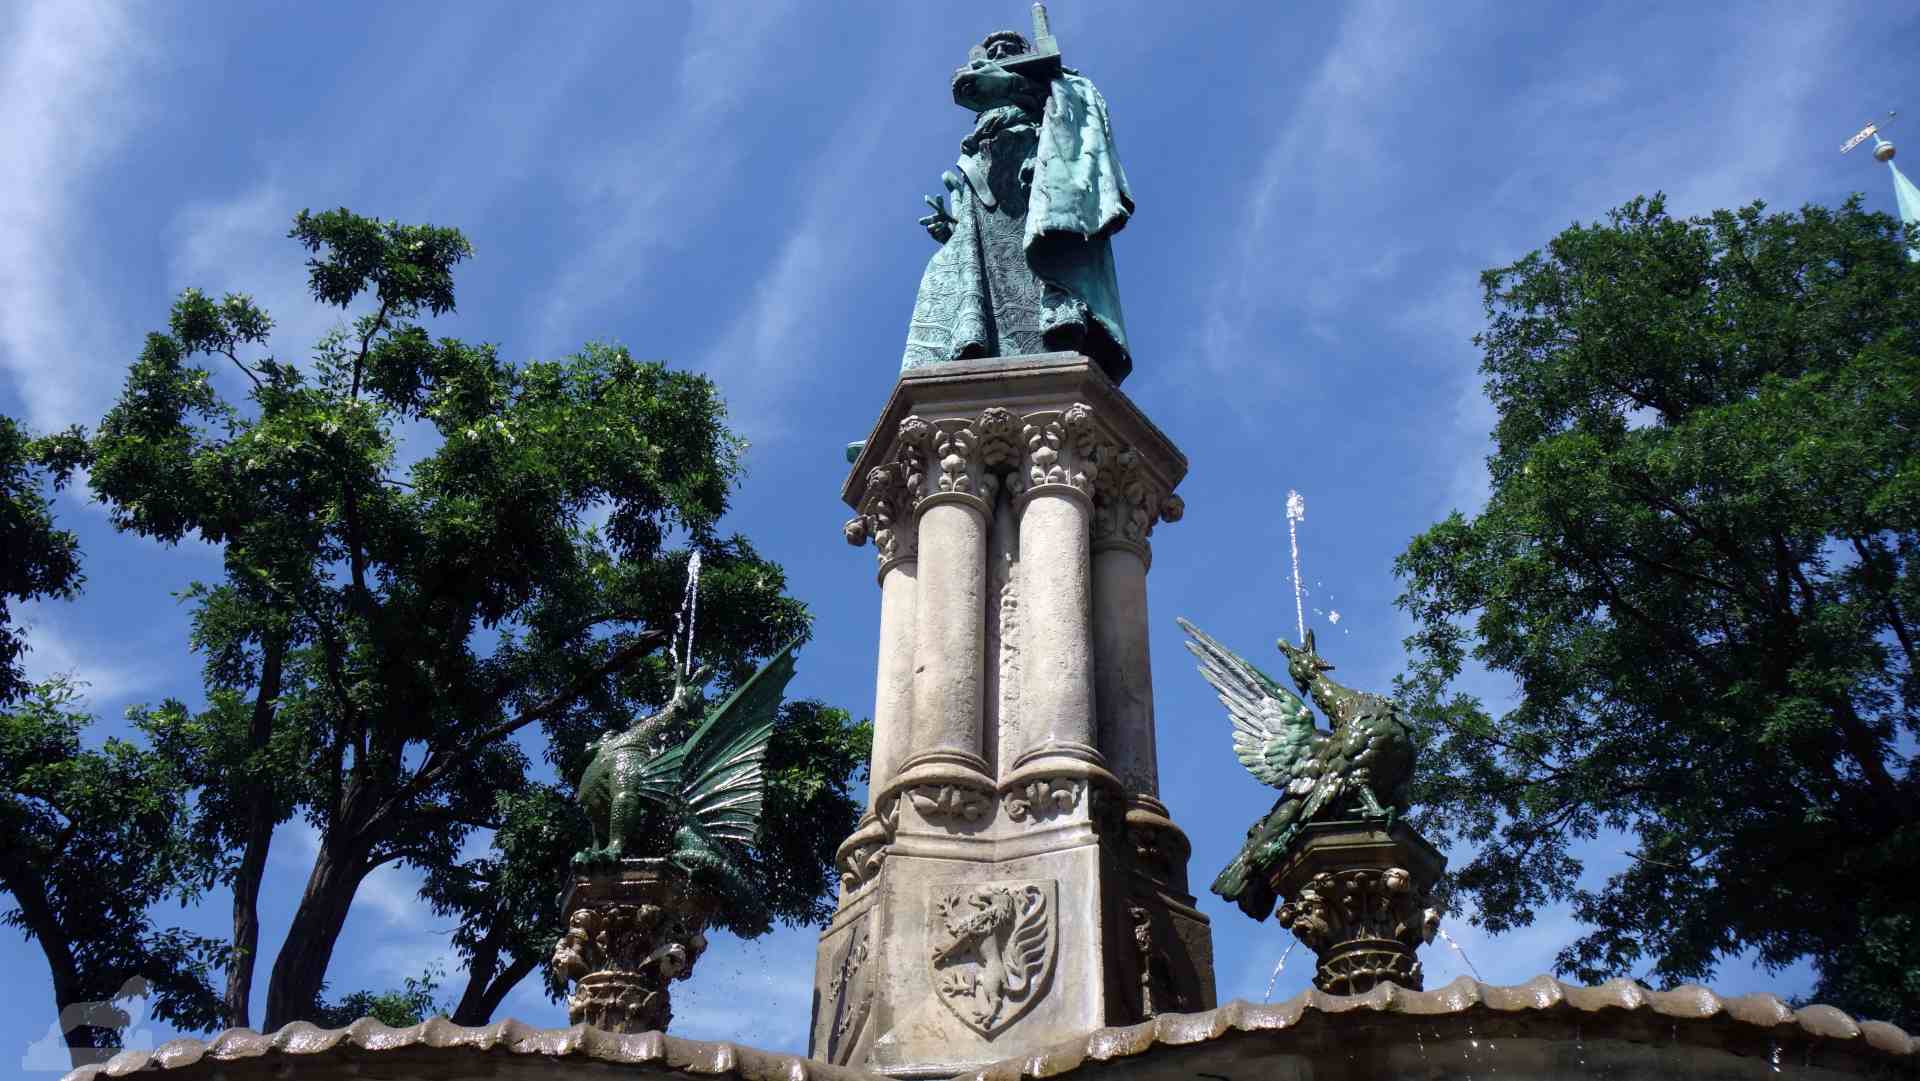 Heinrichsbrunnen